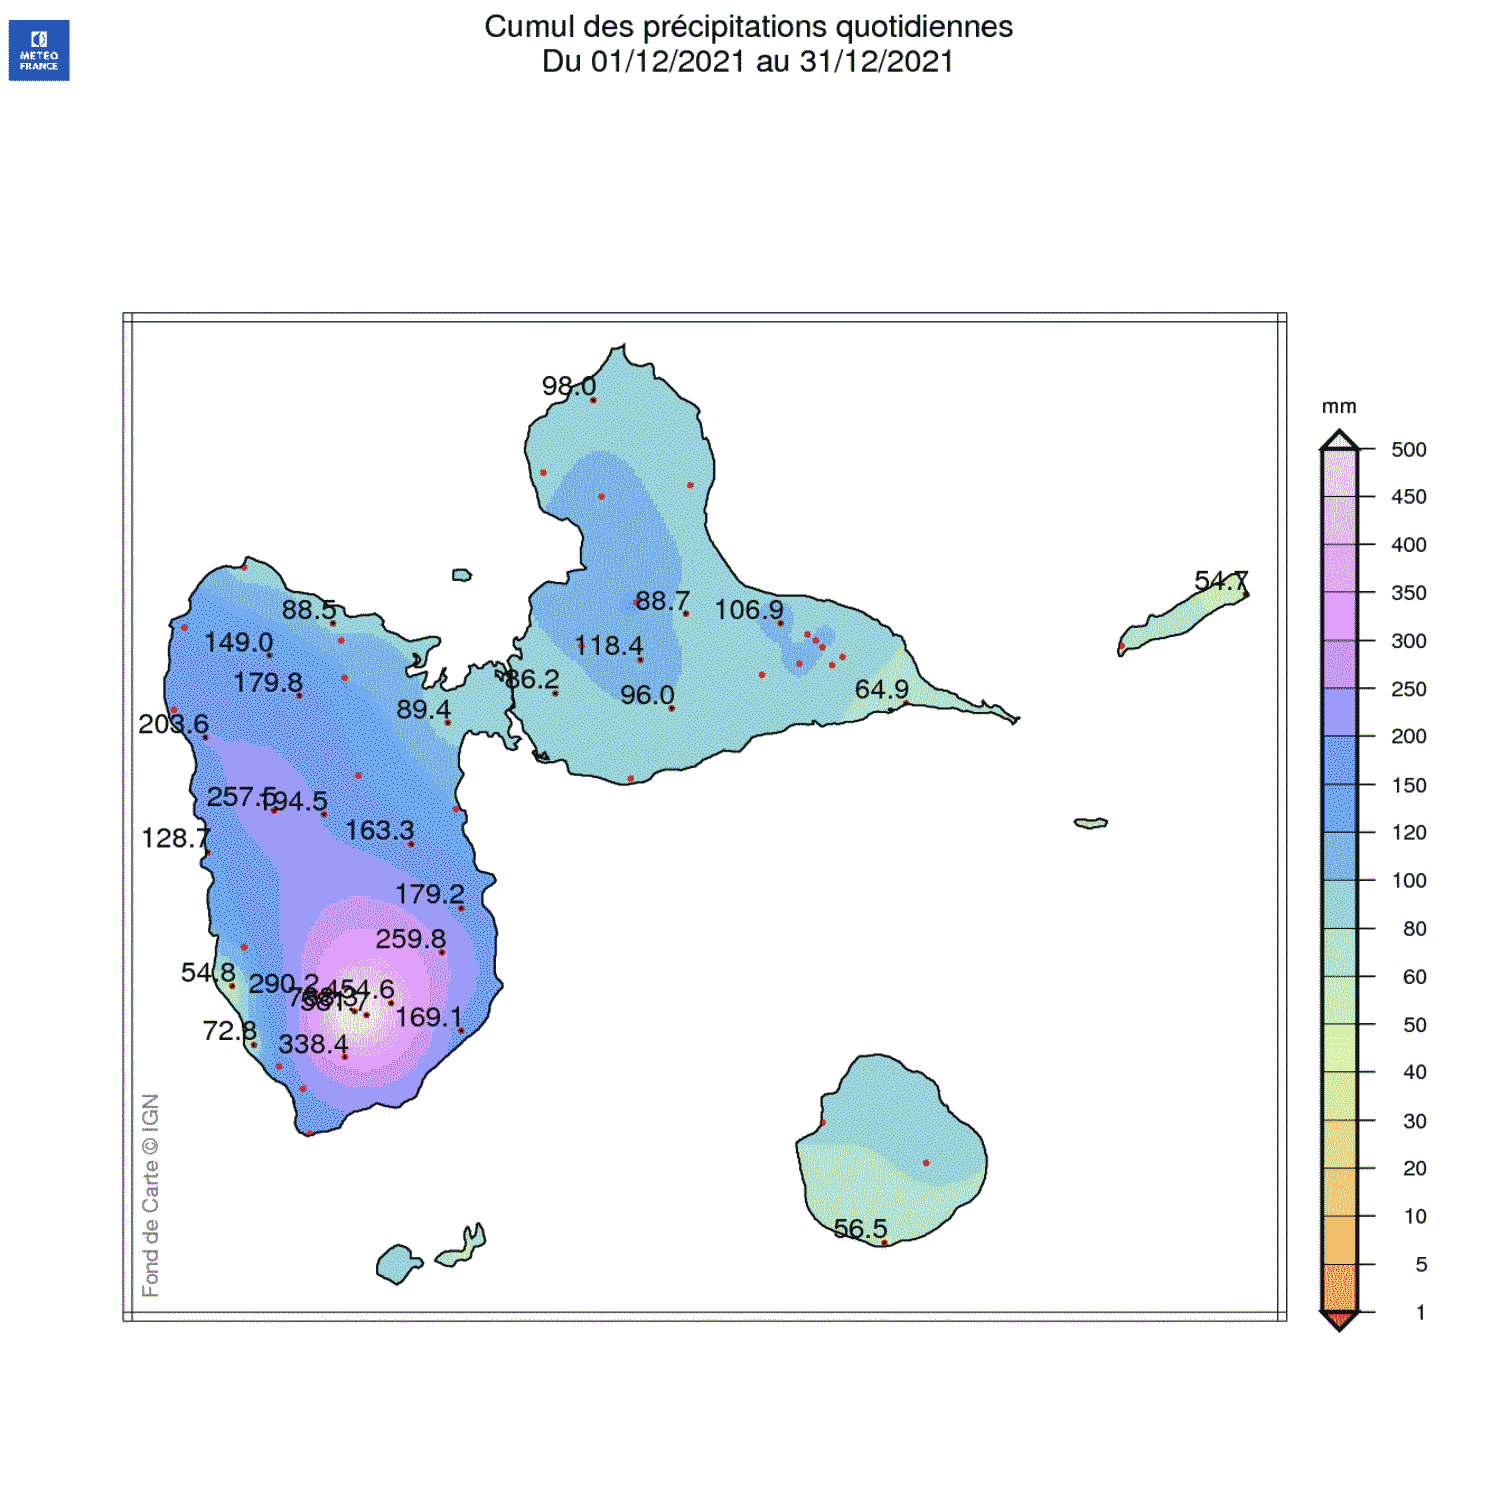 Cumul des pluies en Décembre 2021 pour la Guadeloupe